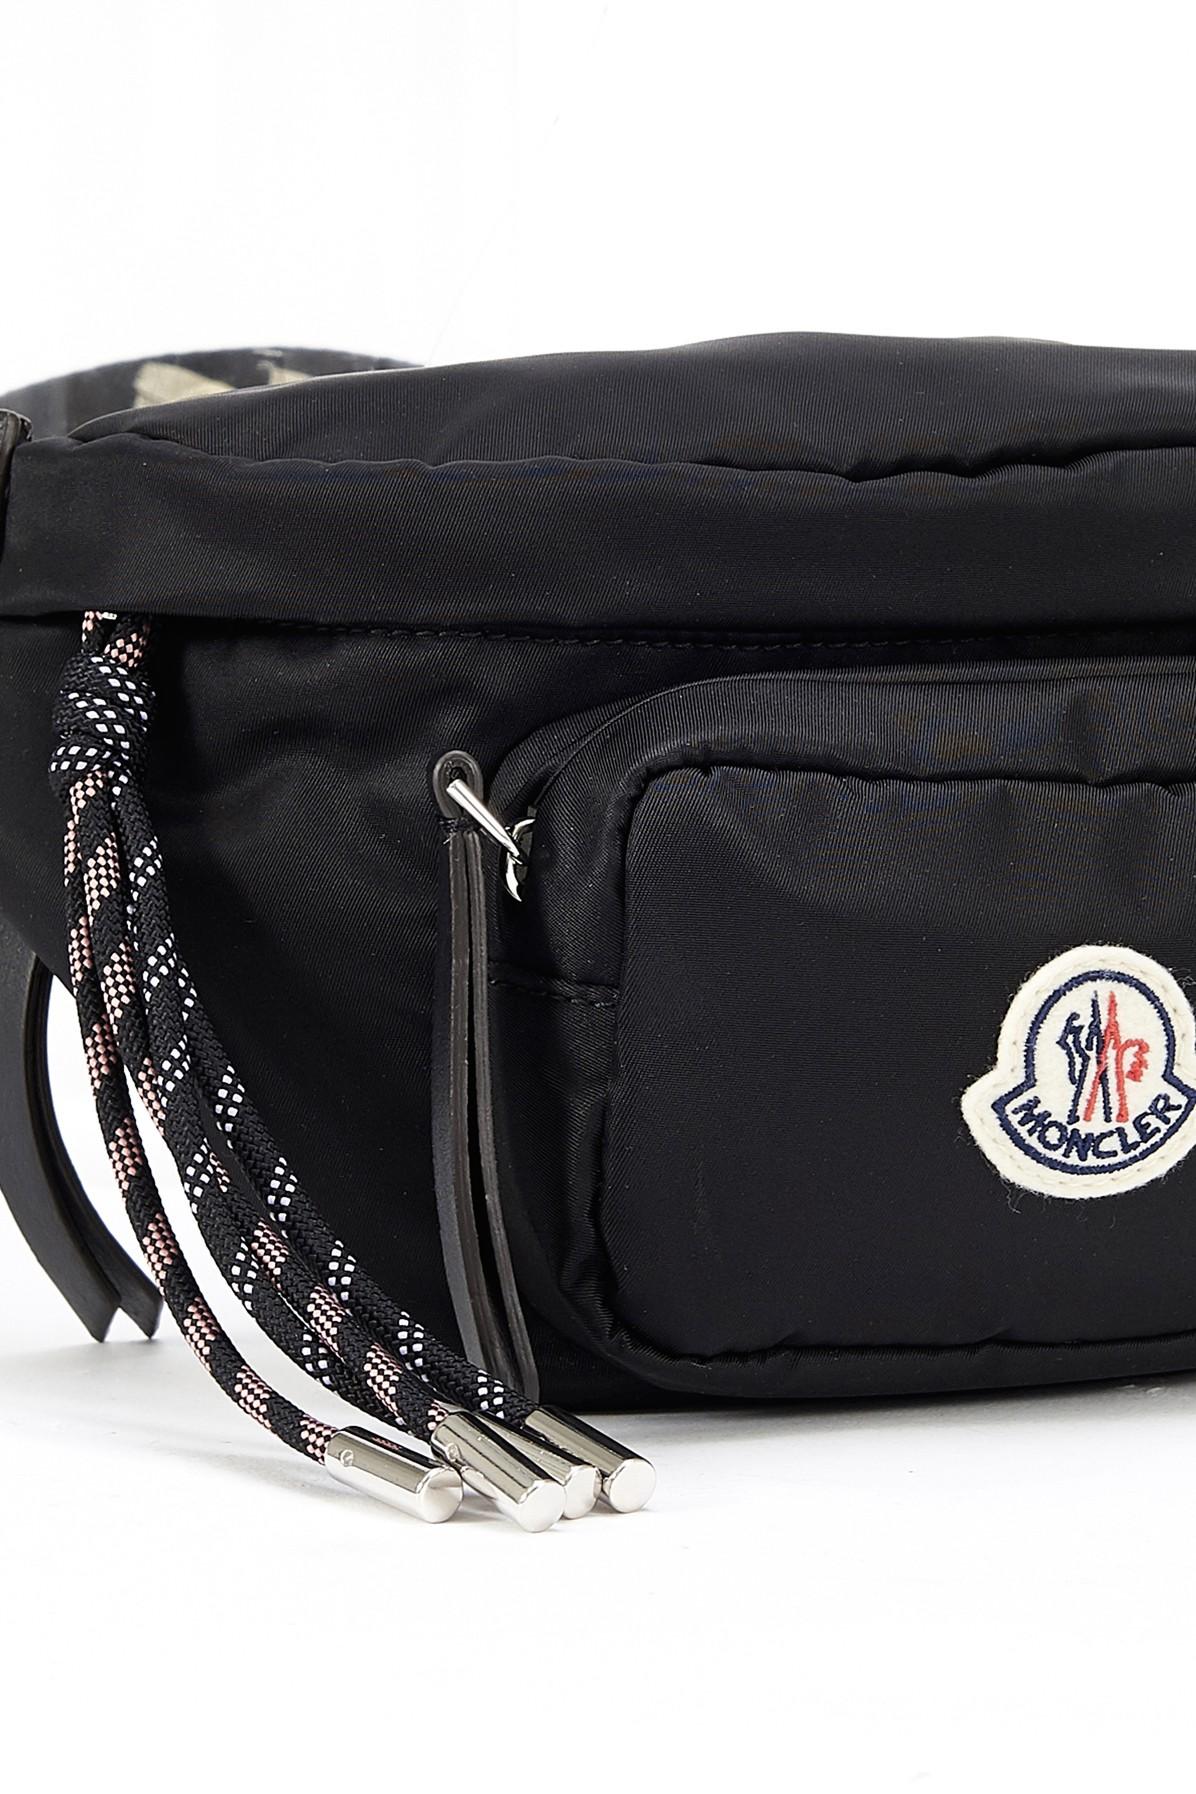 Moncler Logo Patch Belt Bag in Black - Save 38% - Lyst